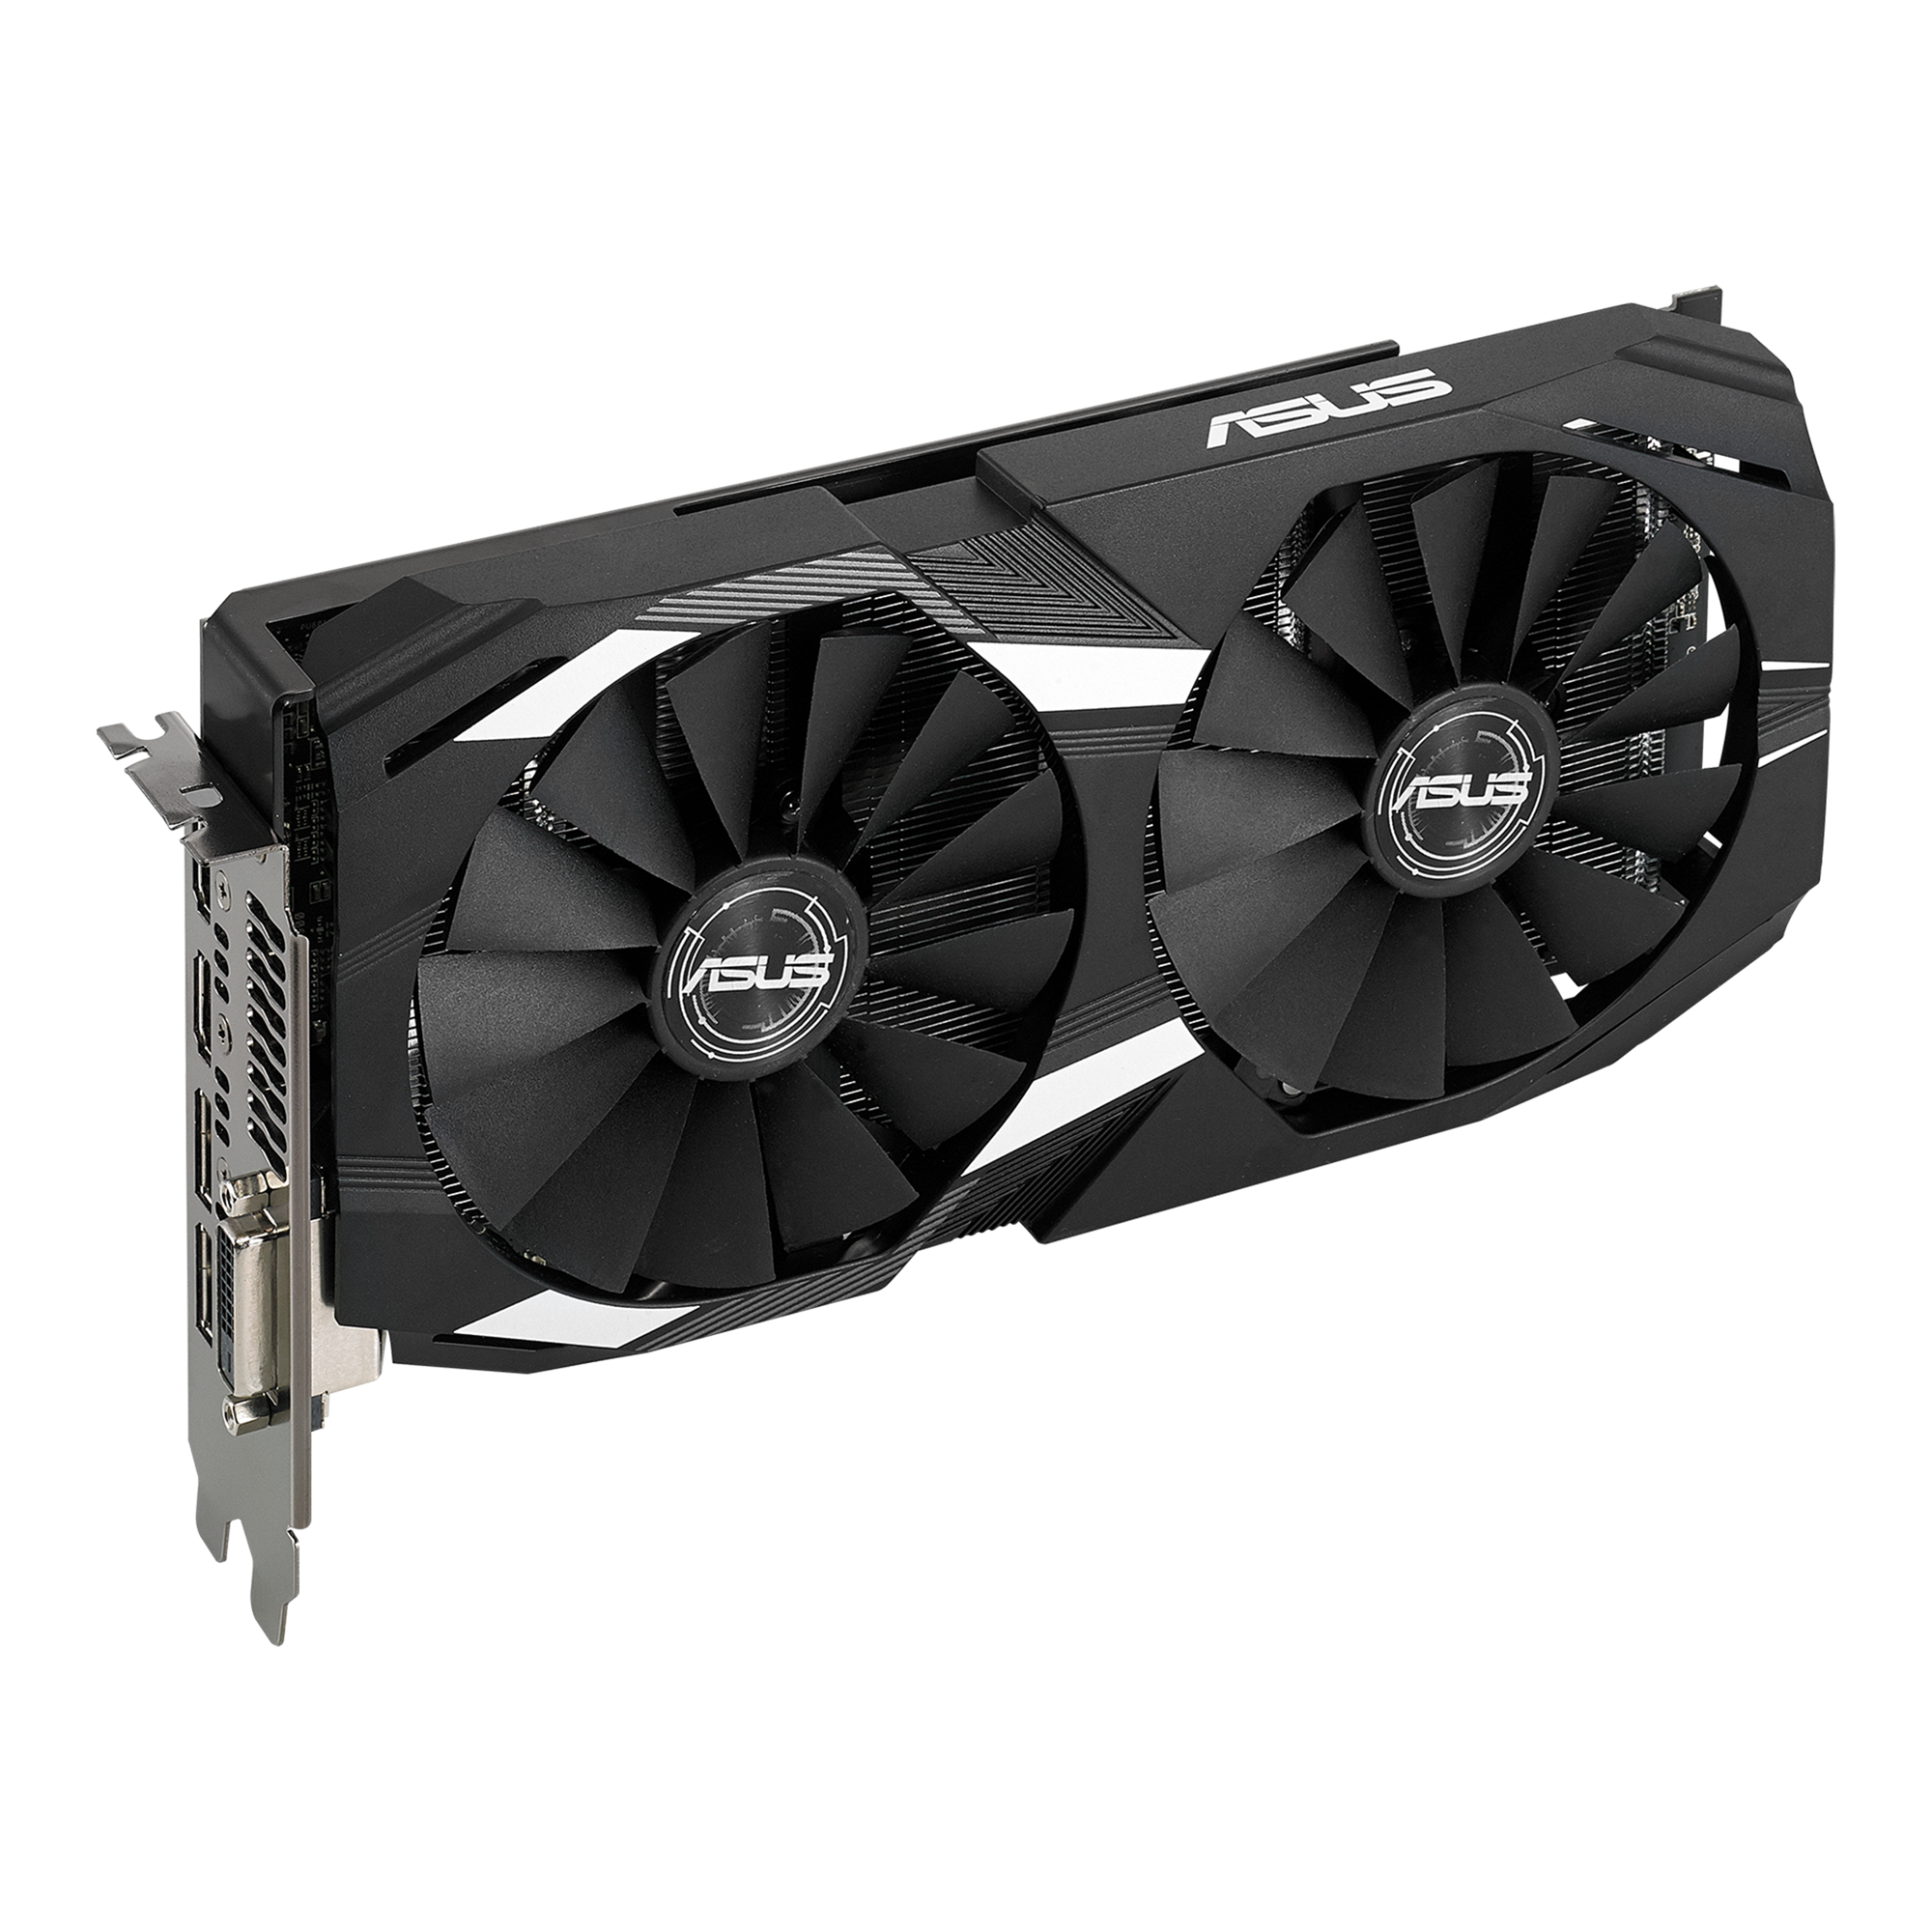 【新品,送料無料】GPU ASUS Strix AMD Radeon RX580